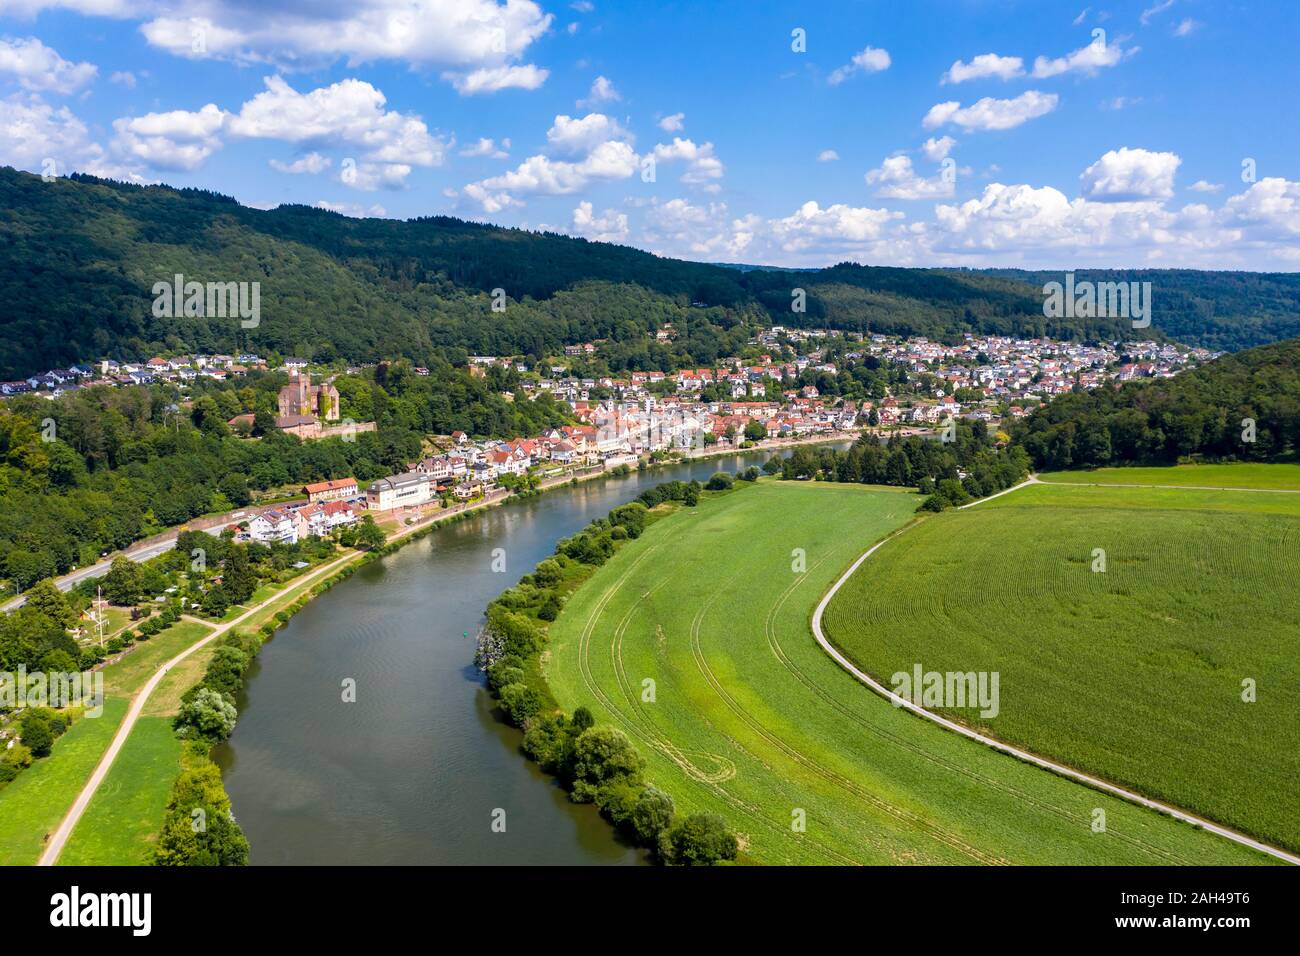 Alemania, Baden-Wurttemberg, Neckarsteinach, vista aérea de la ciudad y castillos, Schadeck Vorderburg, Mittelburg, Hinterburg Foto de stock